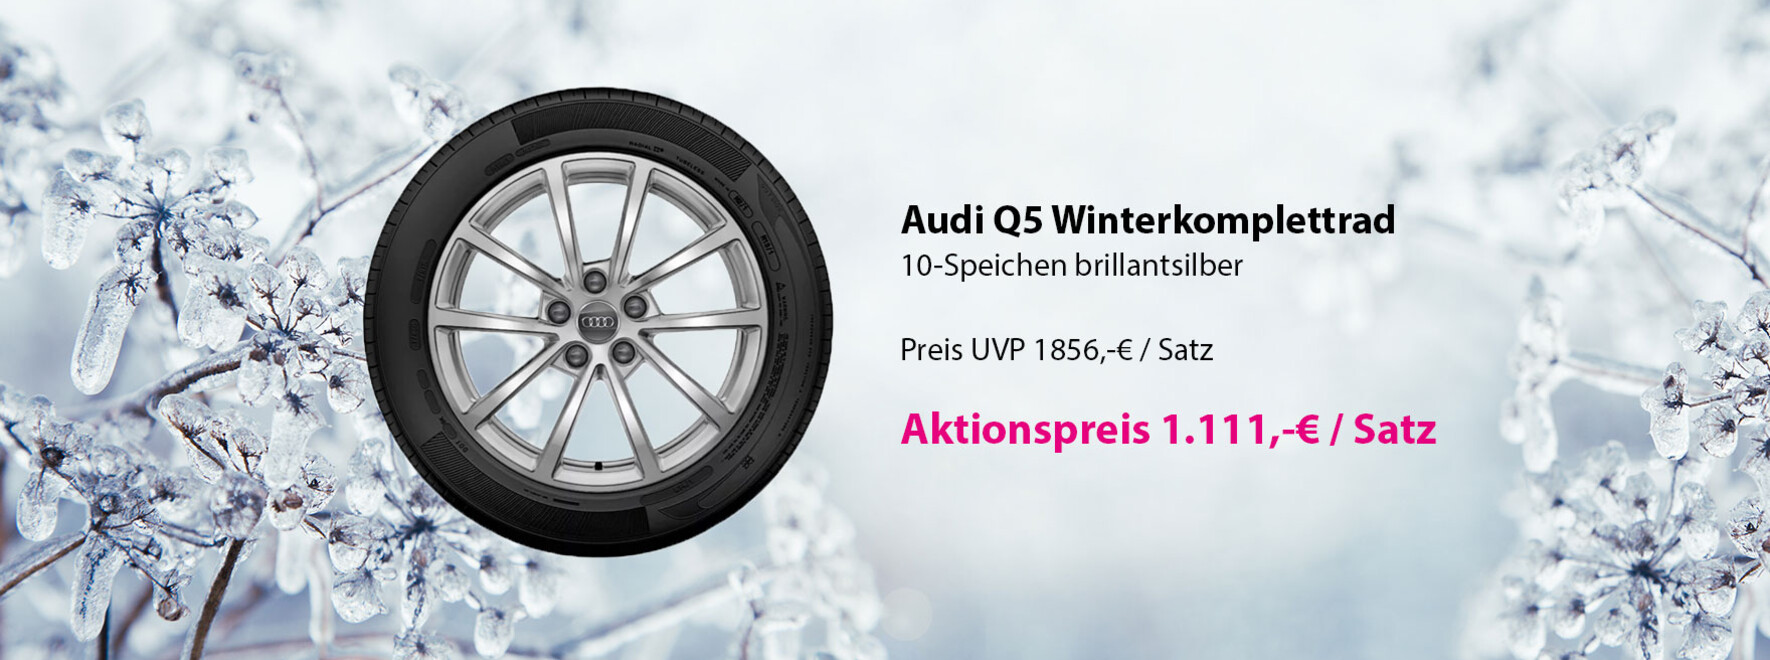 Audi Q5 Winterkomplettrad Aktion | Mit dem Winterkomplettrad kommen Sie komfortabel an Ihr Ziel